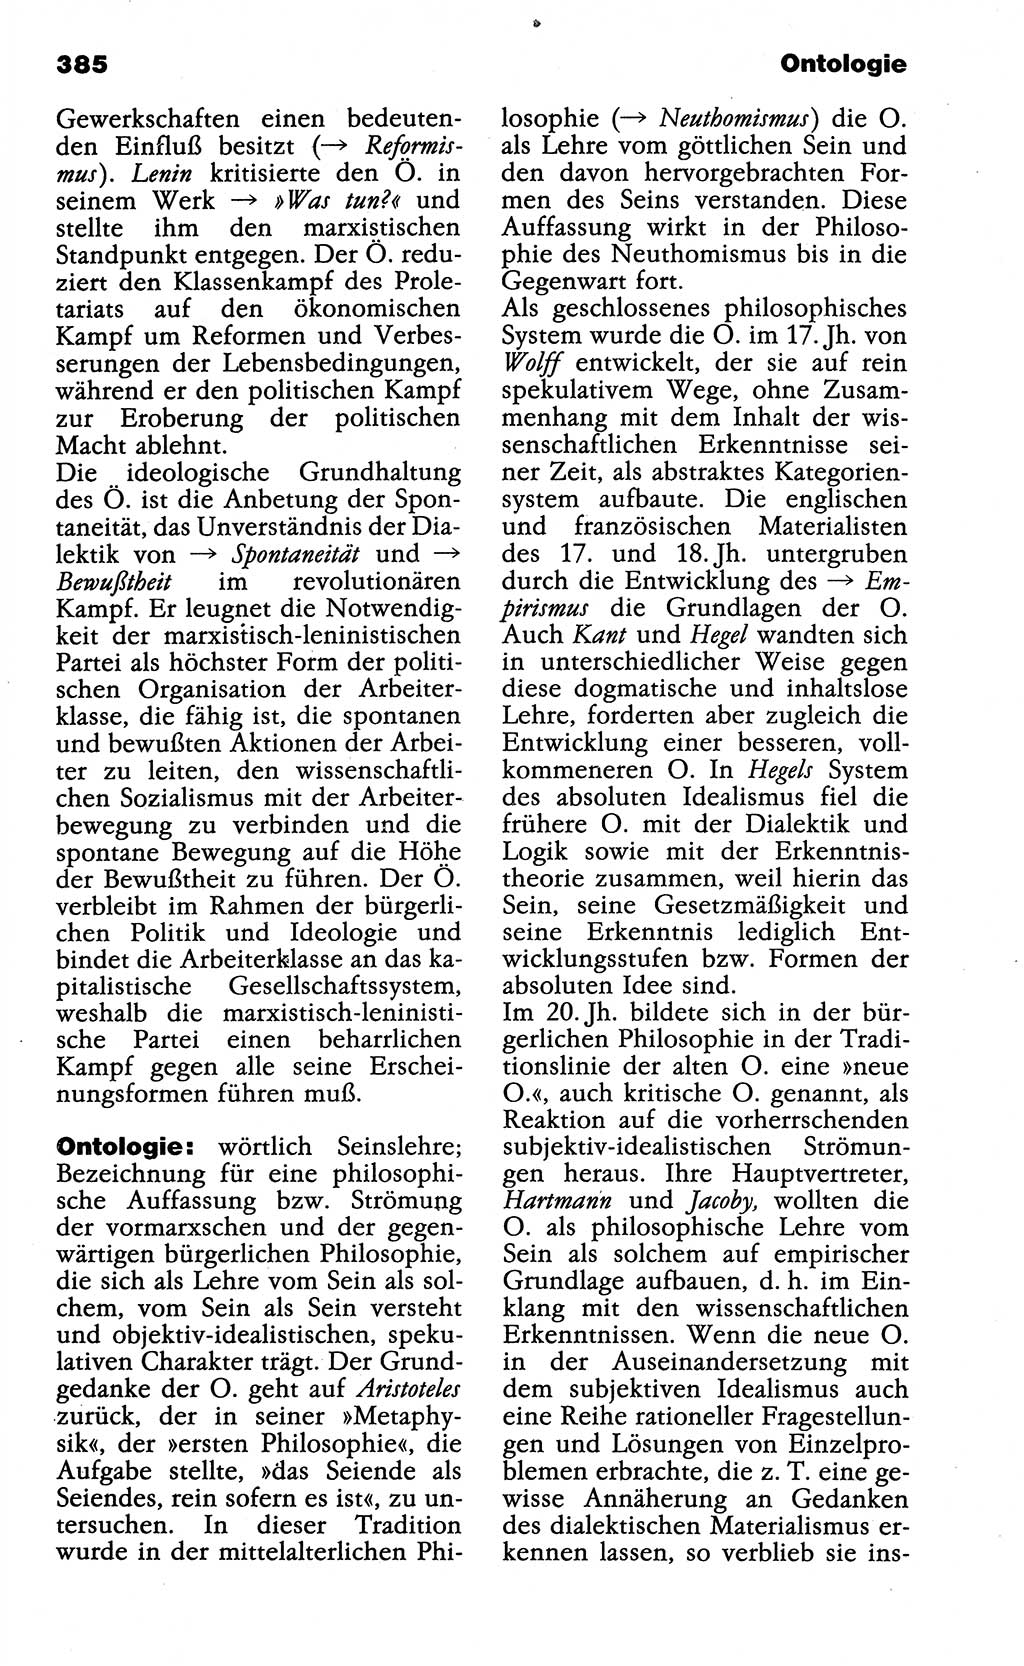 Wörterbuch der marxistisch-leninistischen Philosophie [Deutsche Demokratische Republik (DDR)] 1985, Seite 385 (Wb. ML Phil. DDR 1985, S. 385)